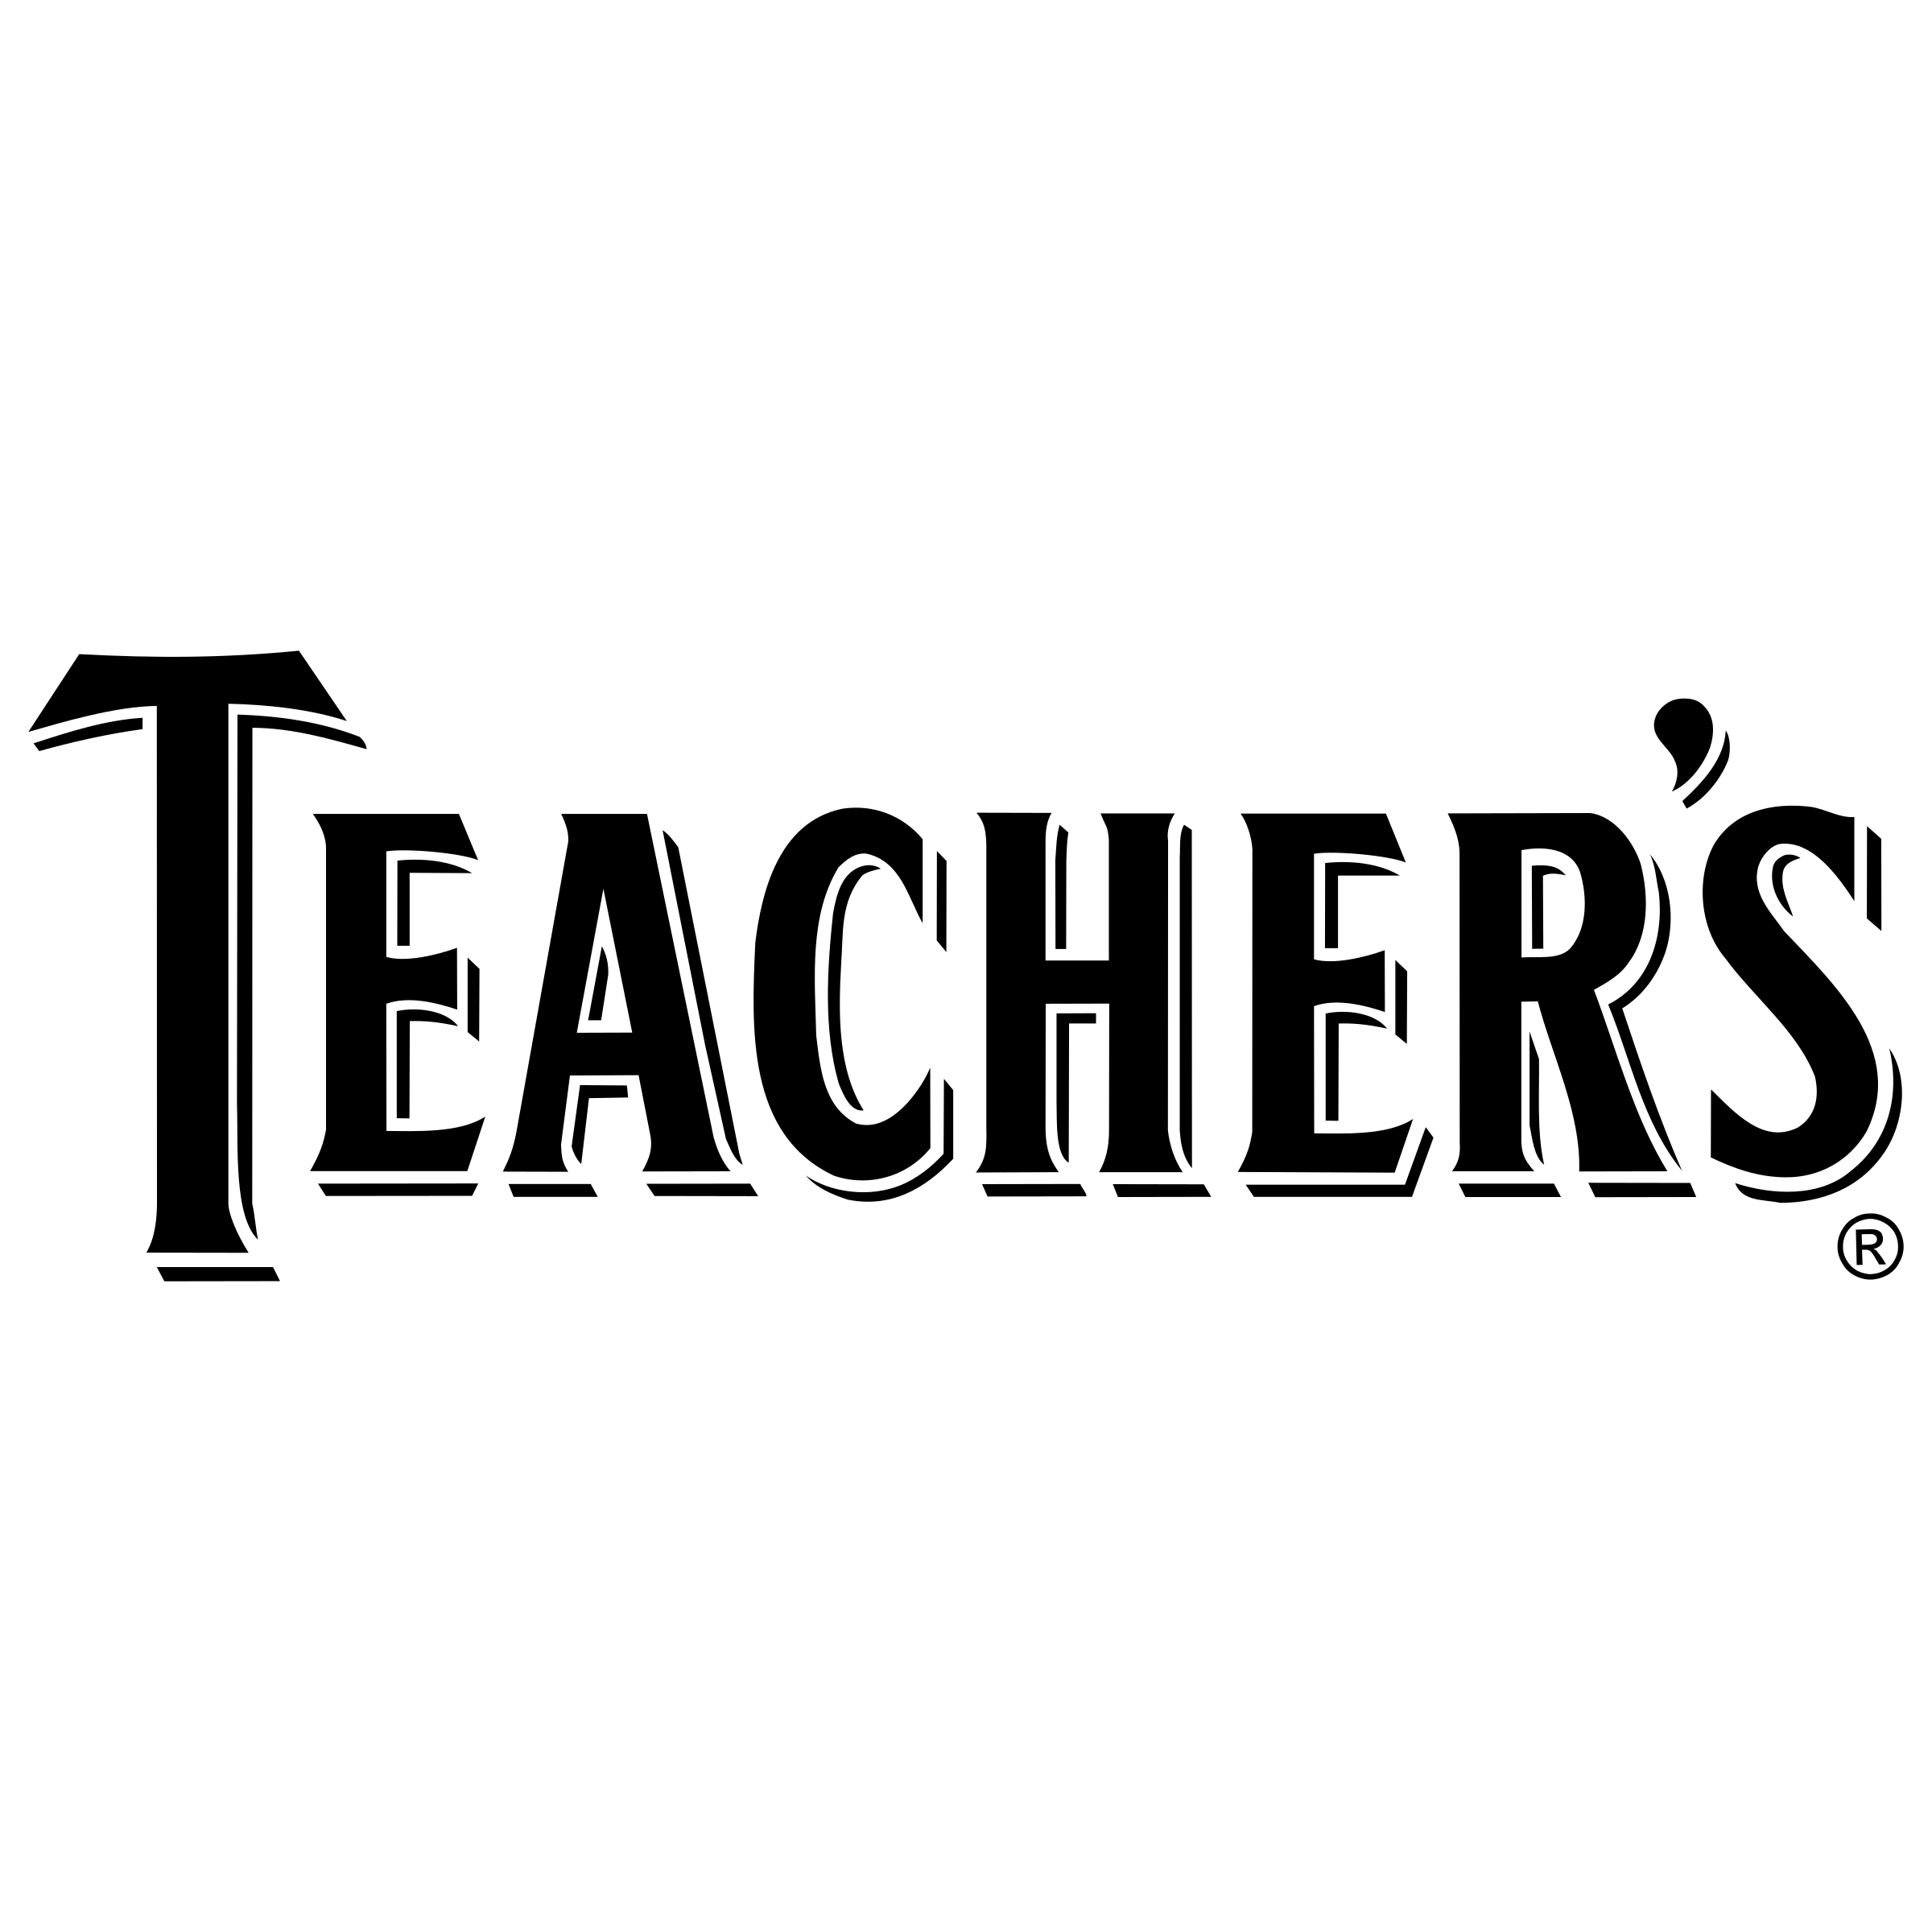 Teacher Logo - Teacher's Logo PNG Transparent & SVG Vector - Freebie Supply